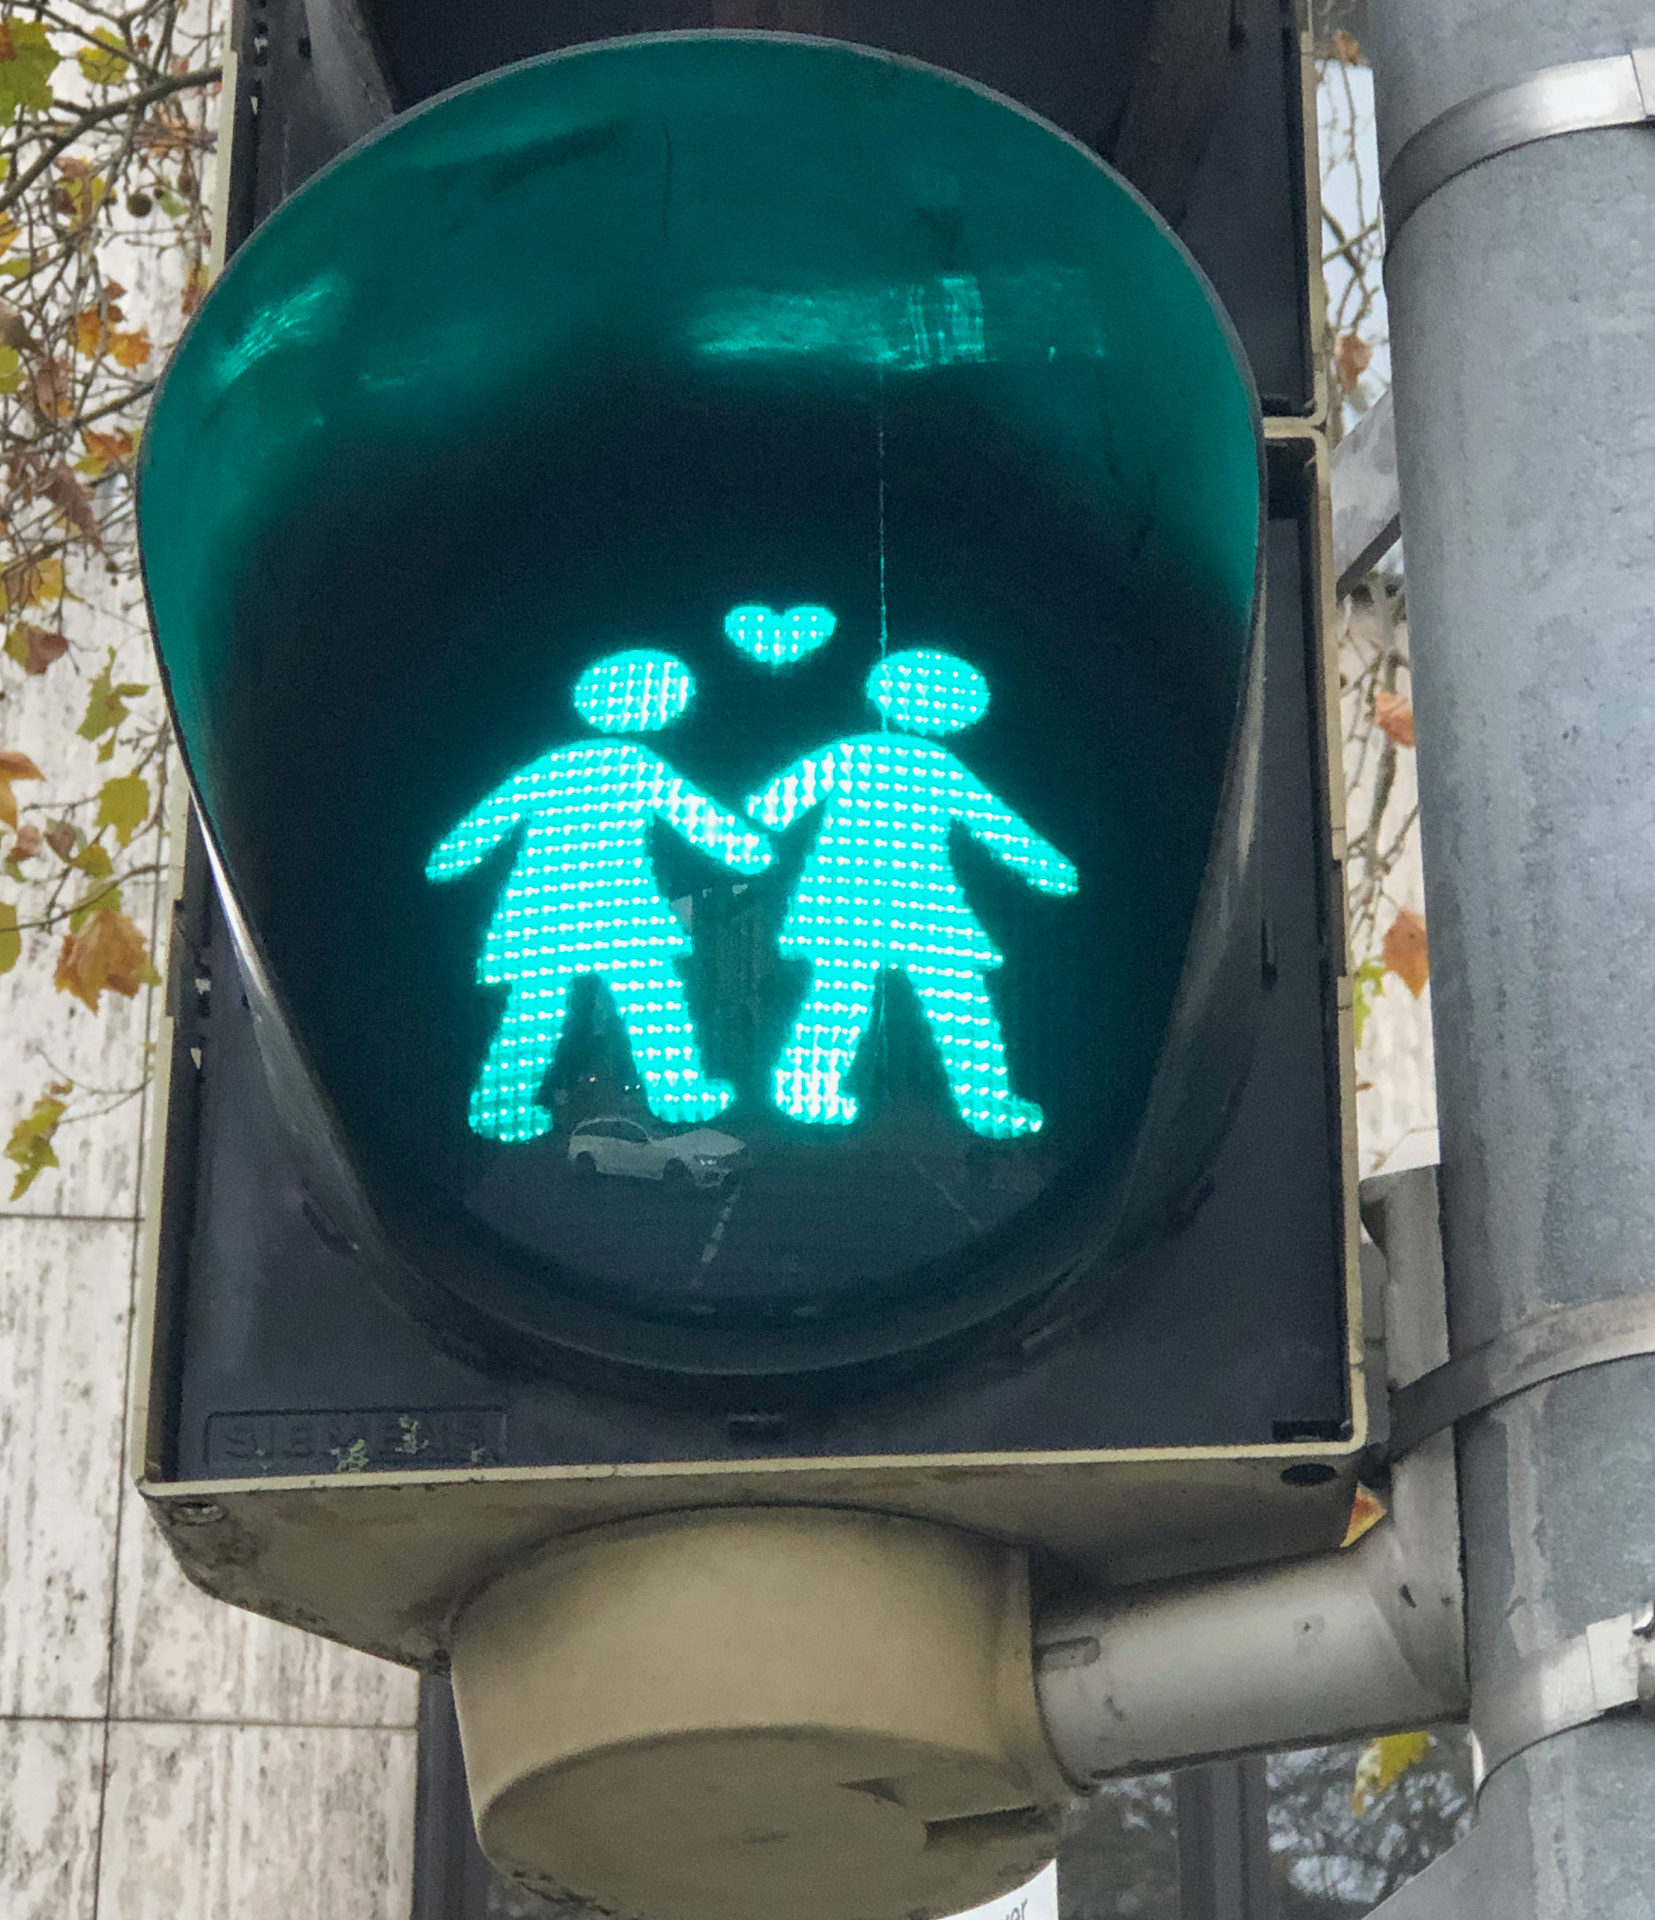 Pärchen mit Herz auf einer Fußgängerampel in Hannover